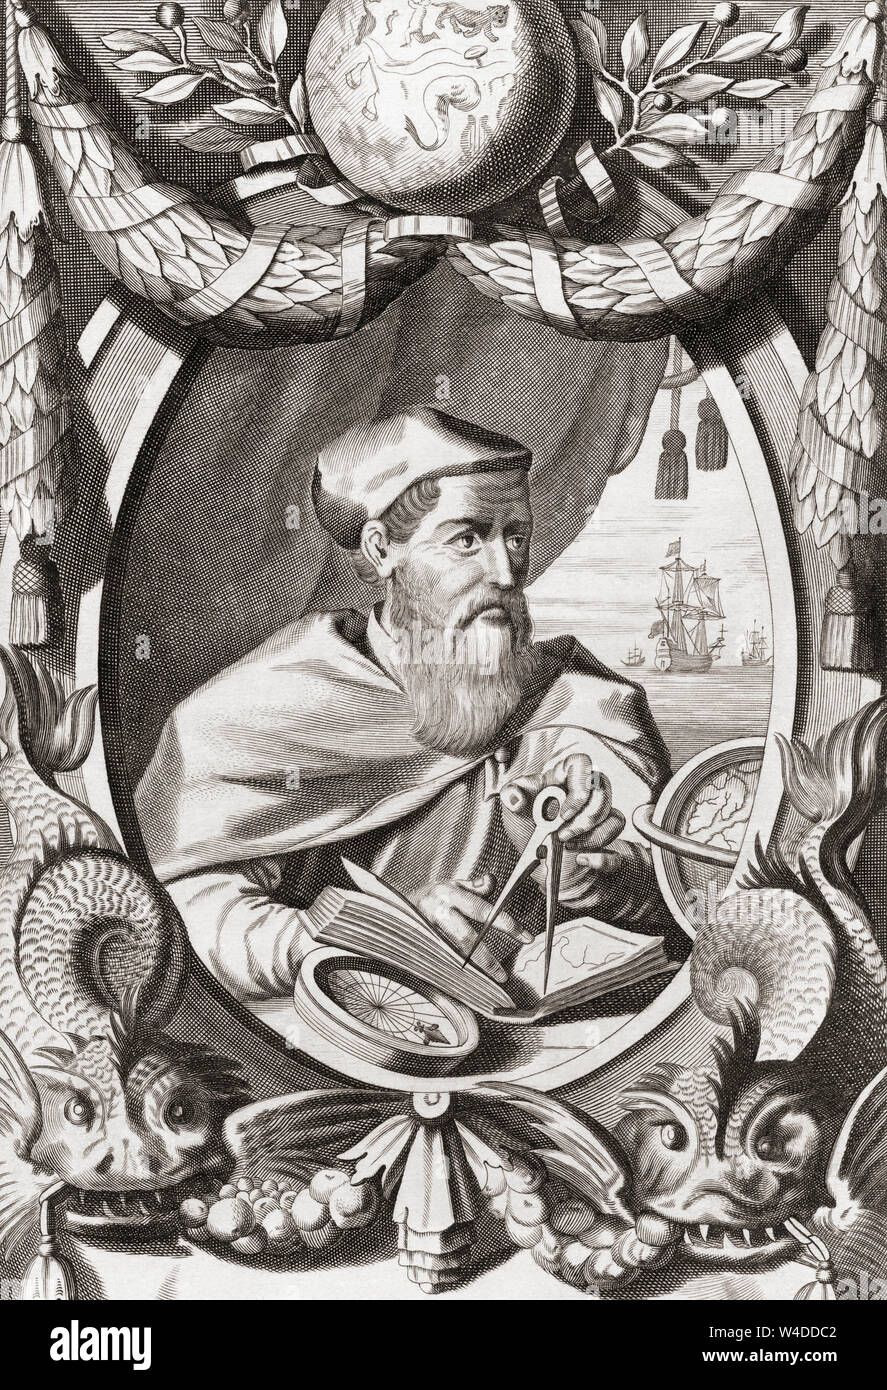 Amerigo Vespucci 1454 - 1512, aka Americus Vespucius. L'explorateur et cartographe italien. Le continent de l'Amérique est nommé d'après lui. Banque D'Images